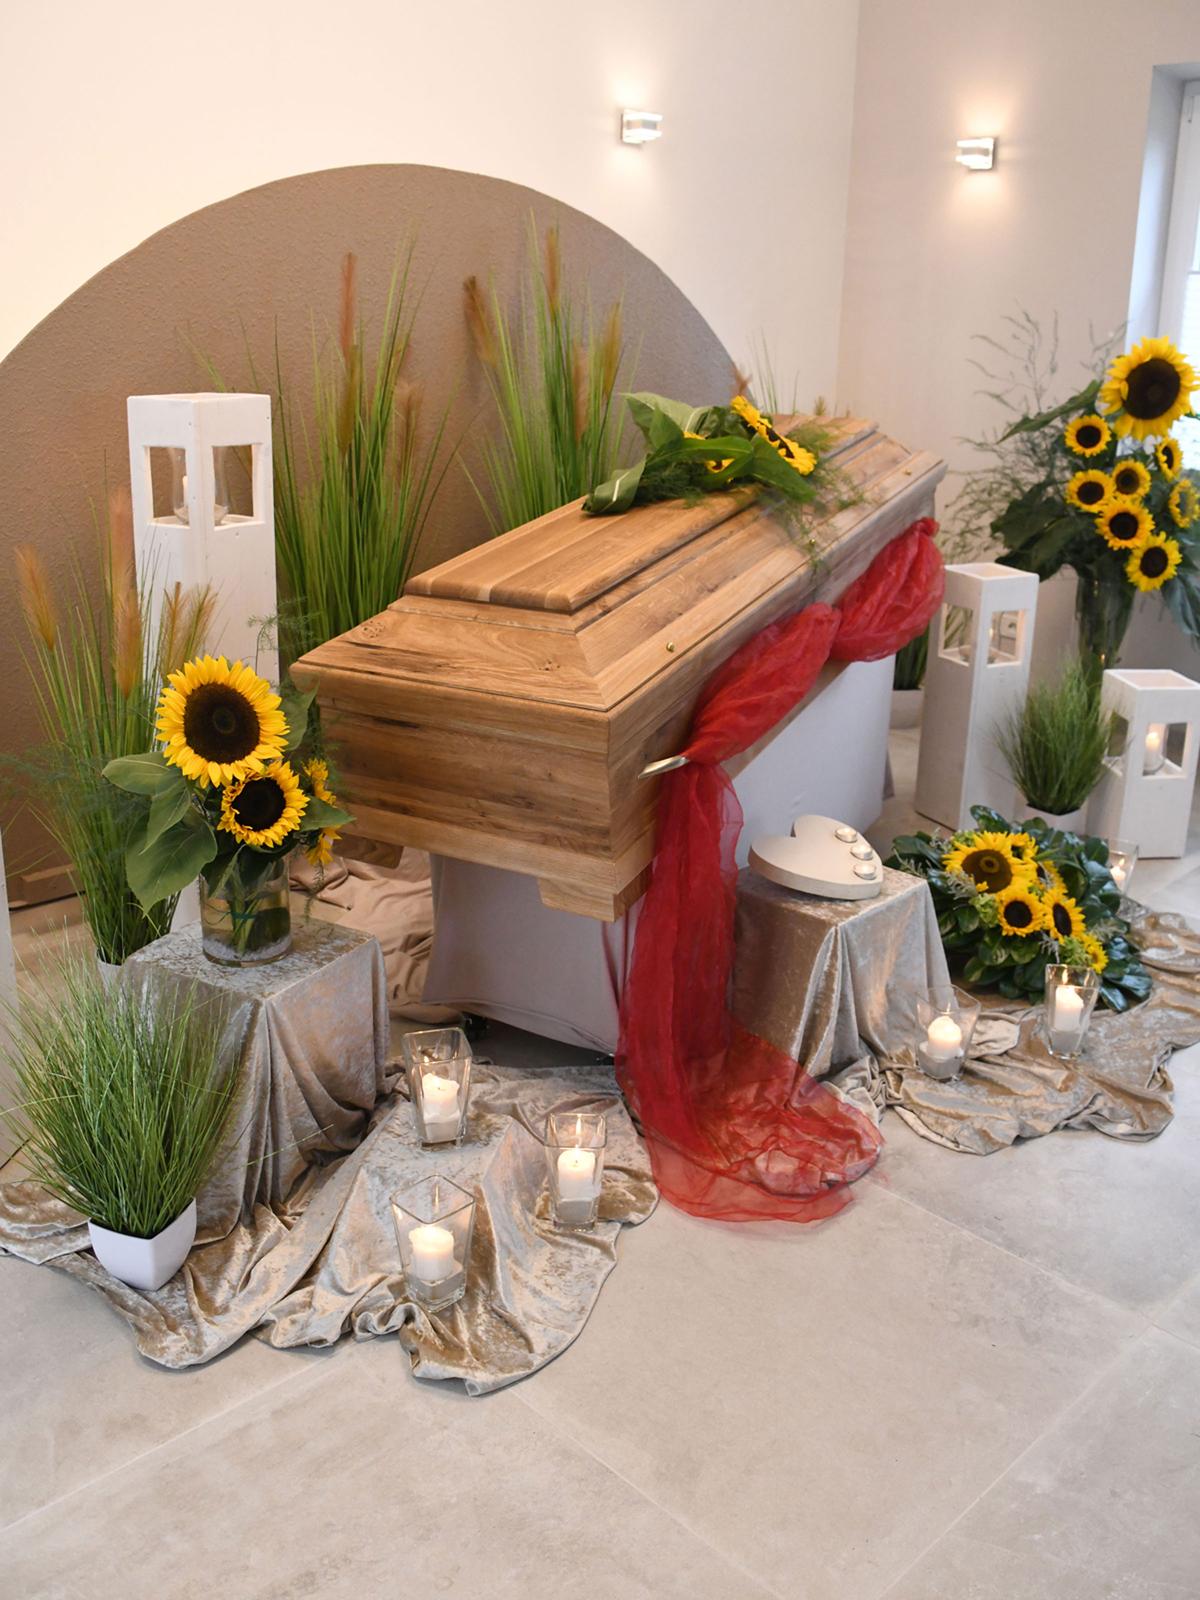 Sargdekoration mit Sonnenblumen in der Trauerhalle von Bestattungen Klink, Neunkirchen-Seelscheid